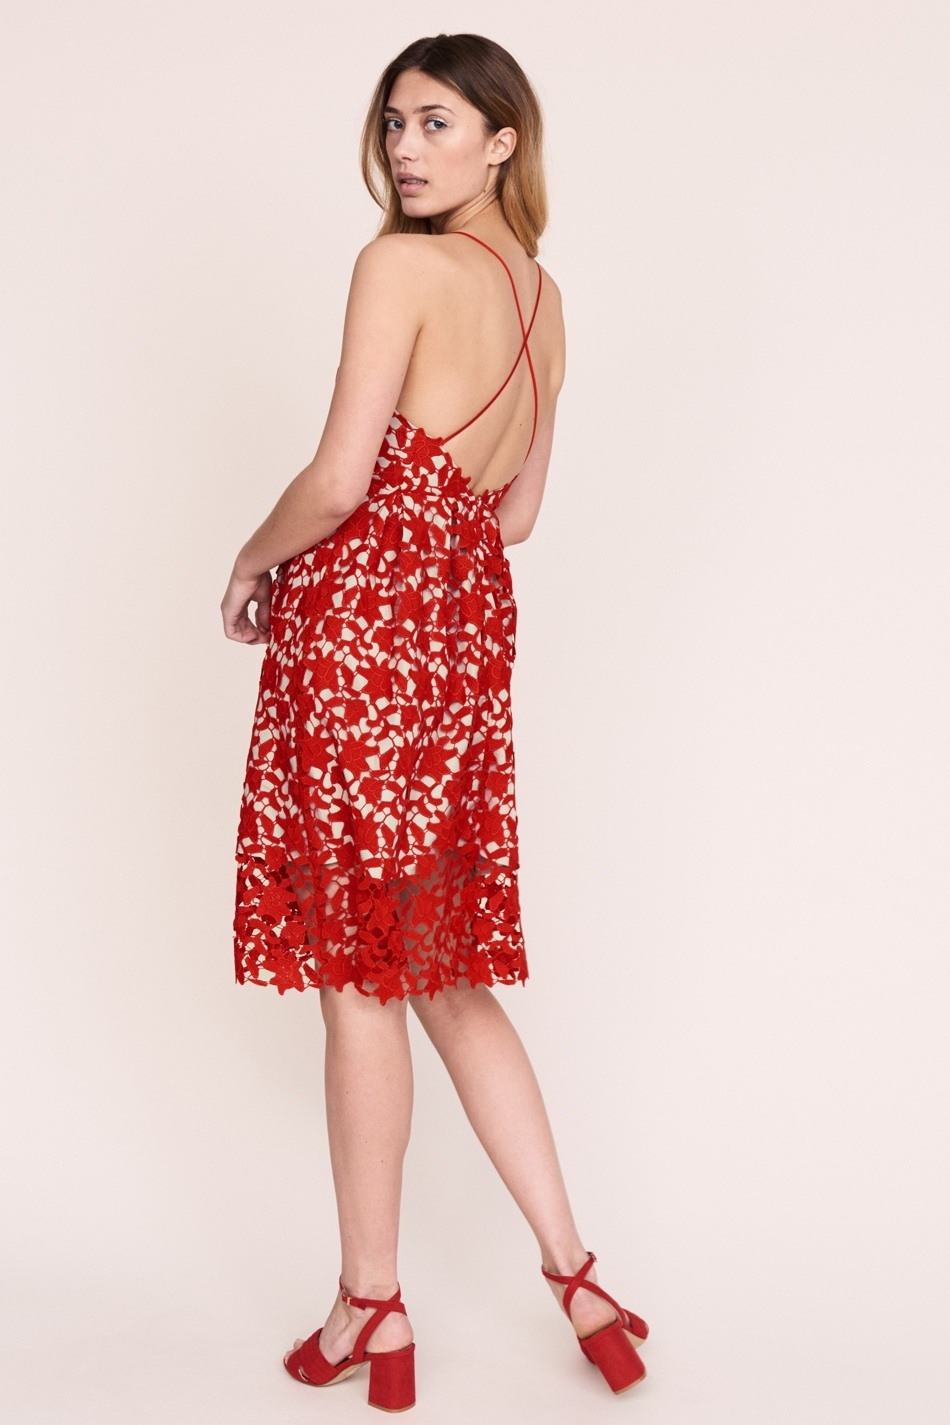 Formal Einzigartig Spitzenkleid Rot Design  Abendkleid